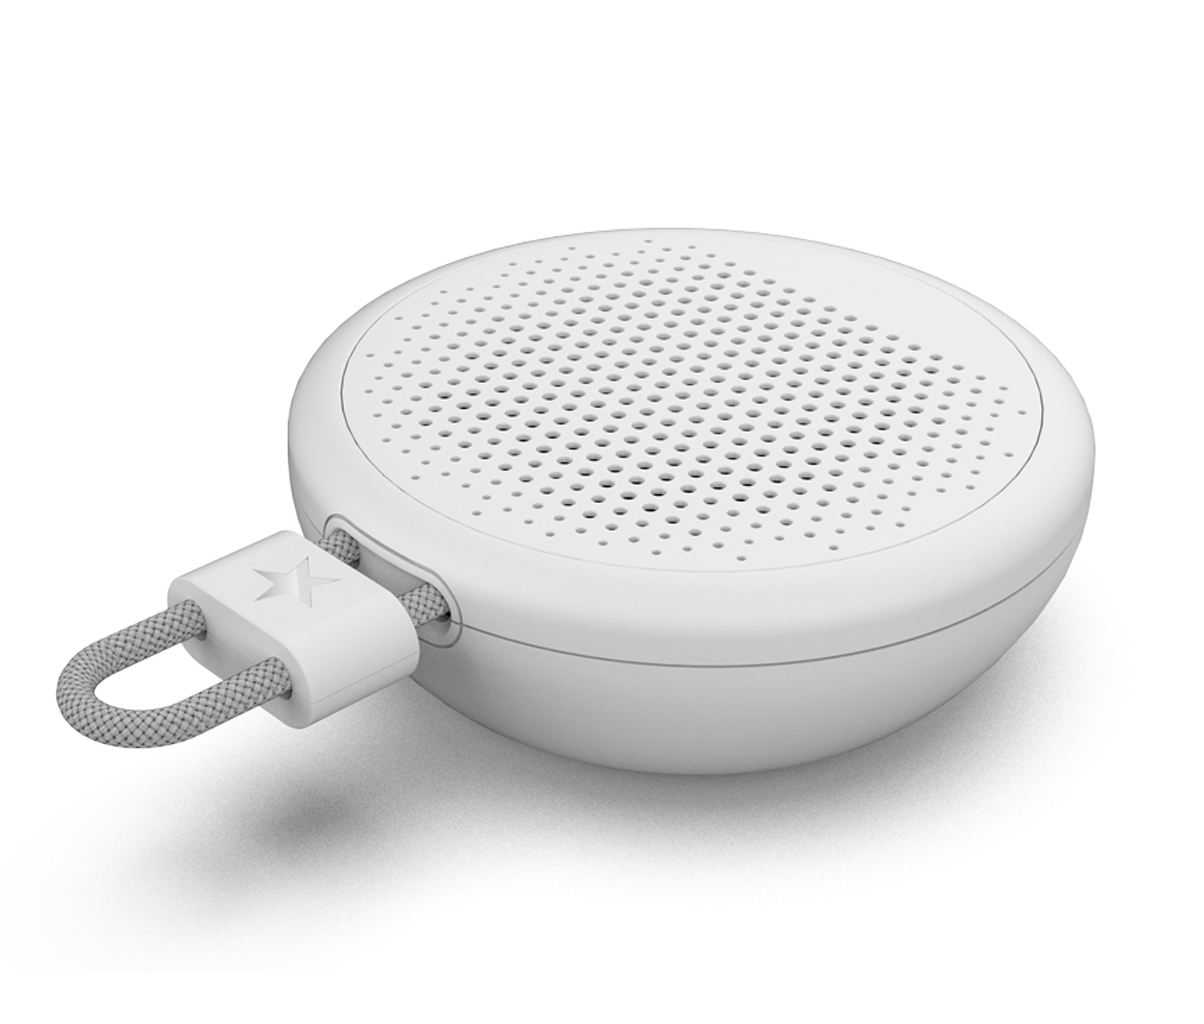 Neuester kleiner Lautsprechermode-Fabrikpreis Bluetooth-Lautsprecher